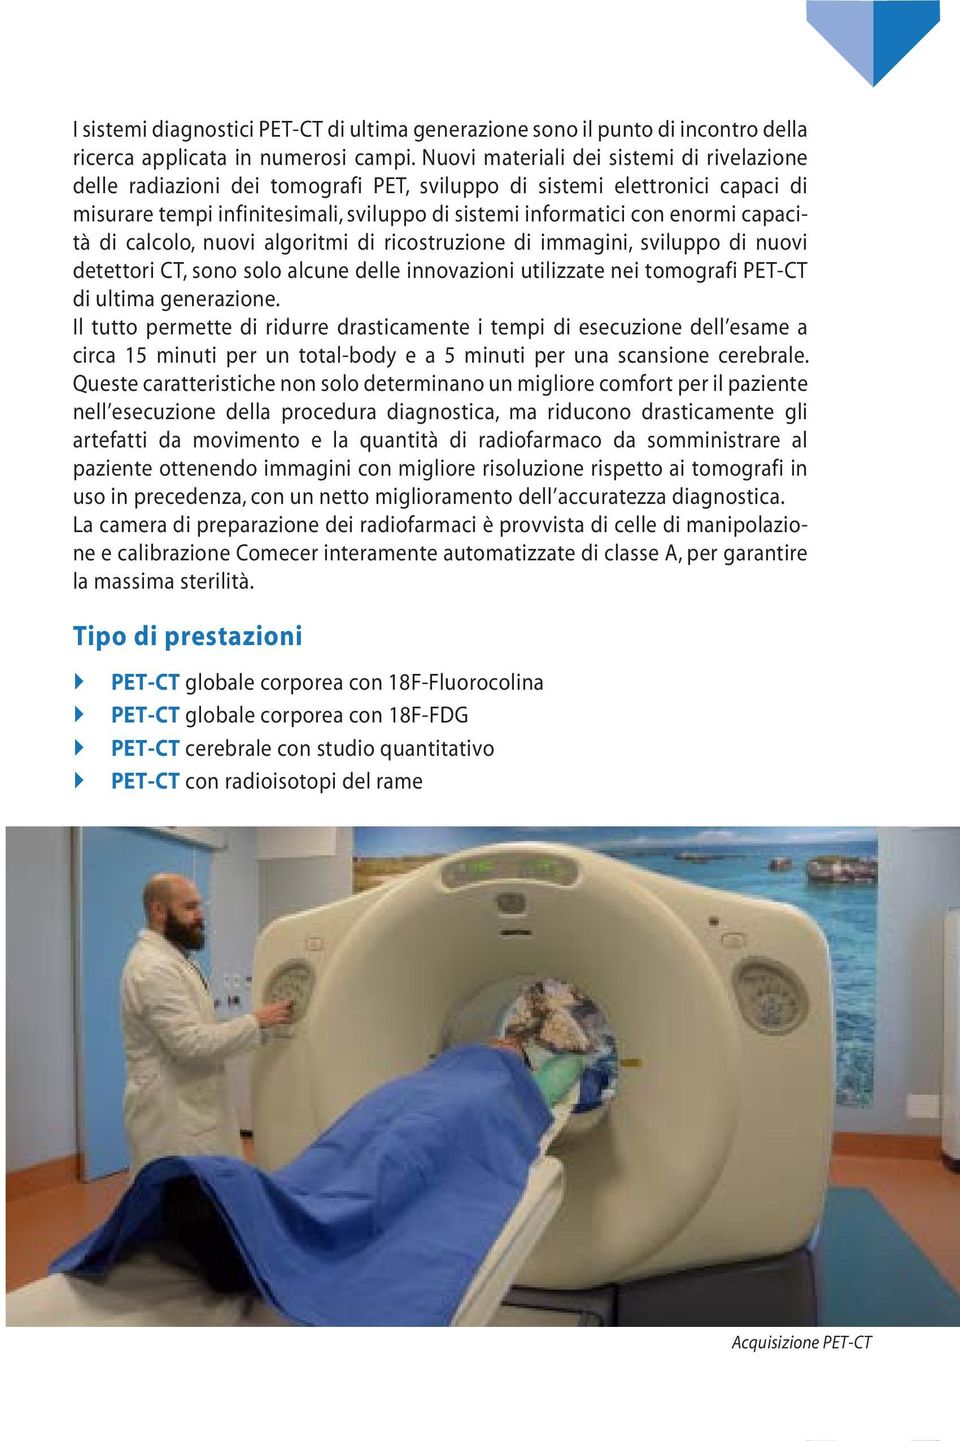 capacità di calcolo, nuovi algoritmi di ricostruzione di immagini, sviluppo di nuovi detettori CT, sono solo alcune delle innovazioni utilizzate nei tomografi PET-CT di ultima generazione.